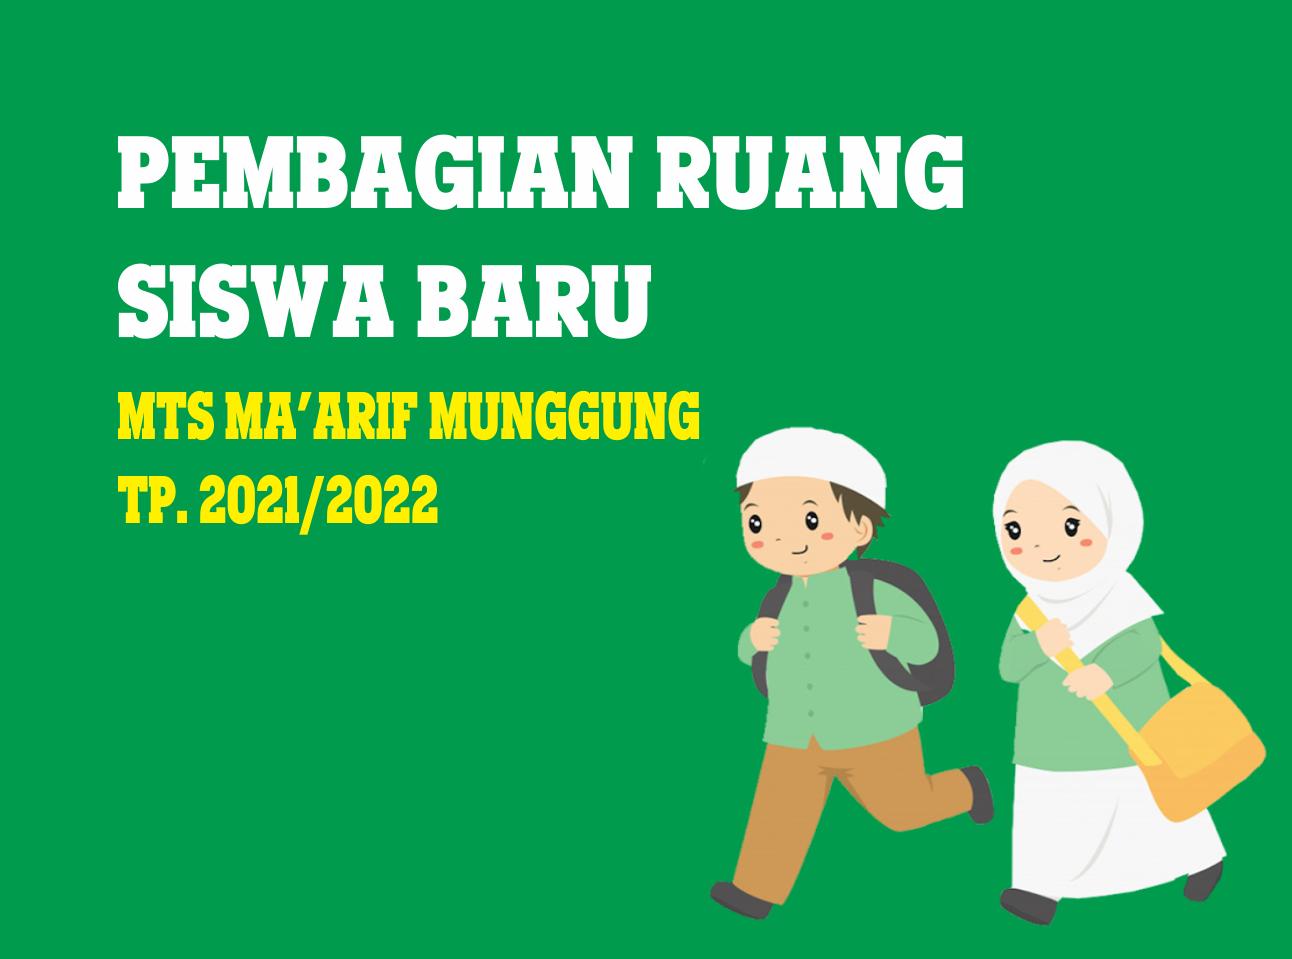 PEMBAGIAN KELAS SISWA BARU TP 2021/2022